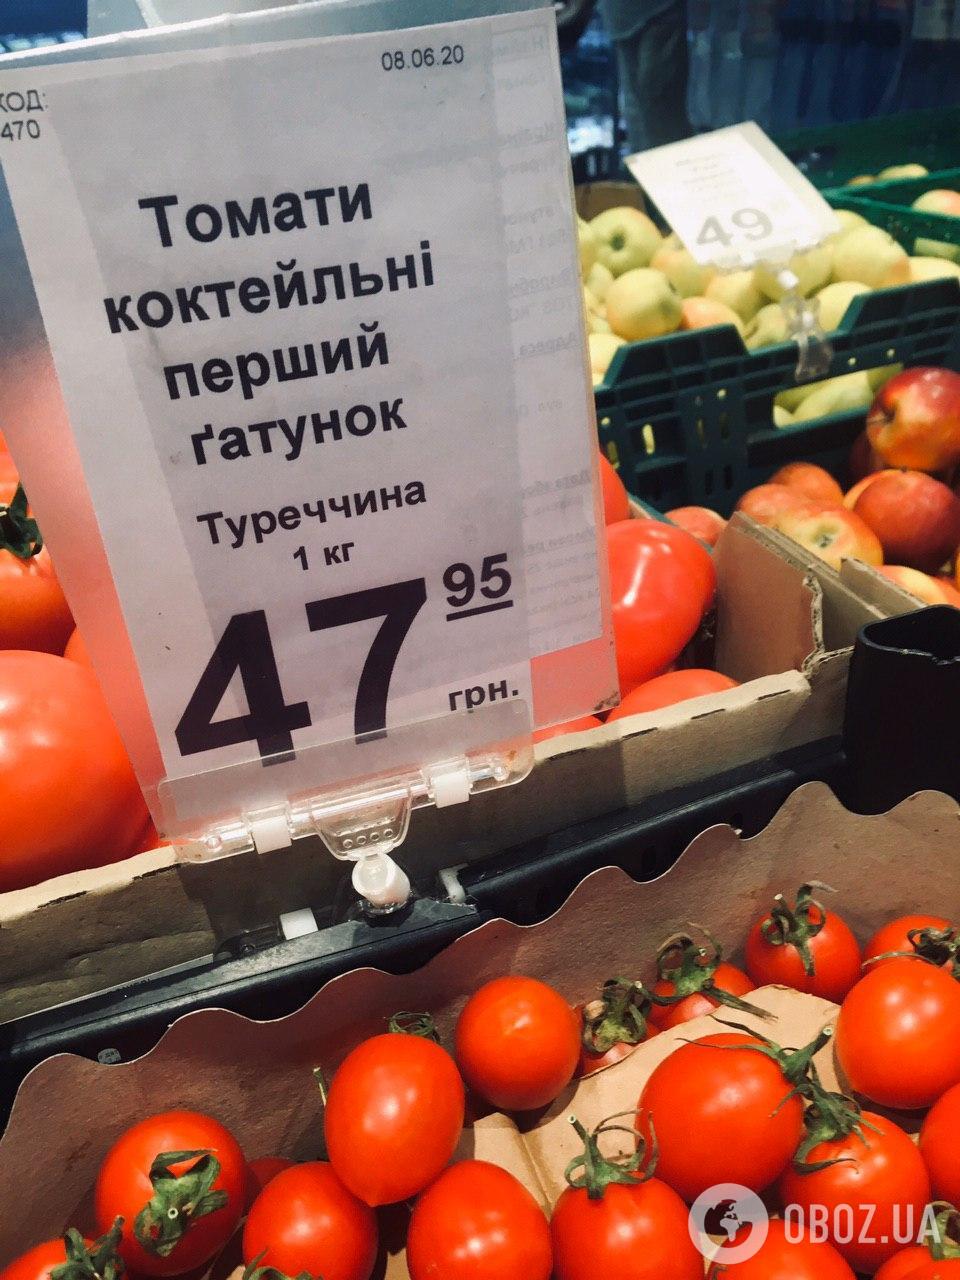 Турецкие томаты дешевле украинских